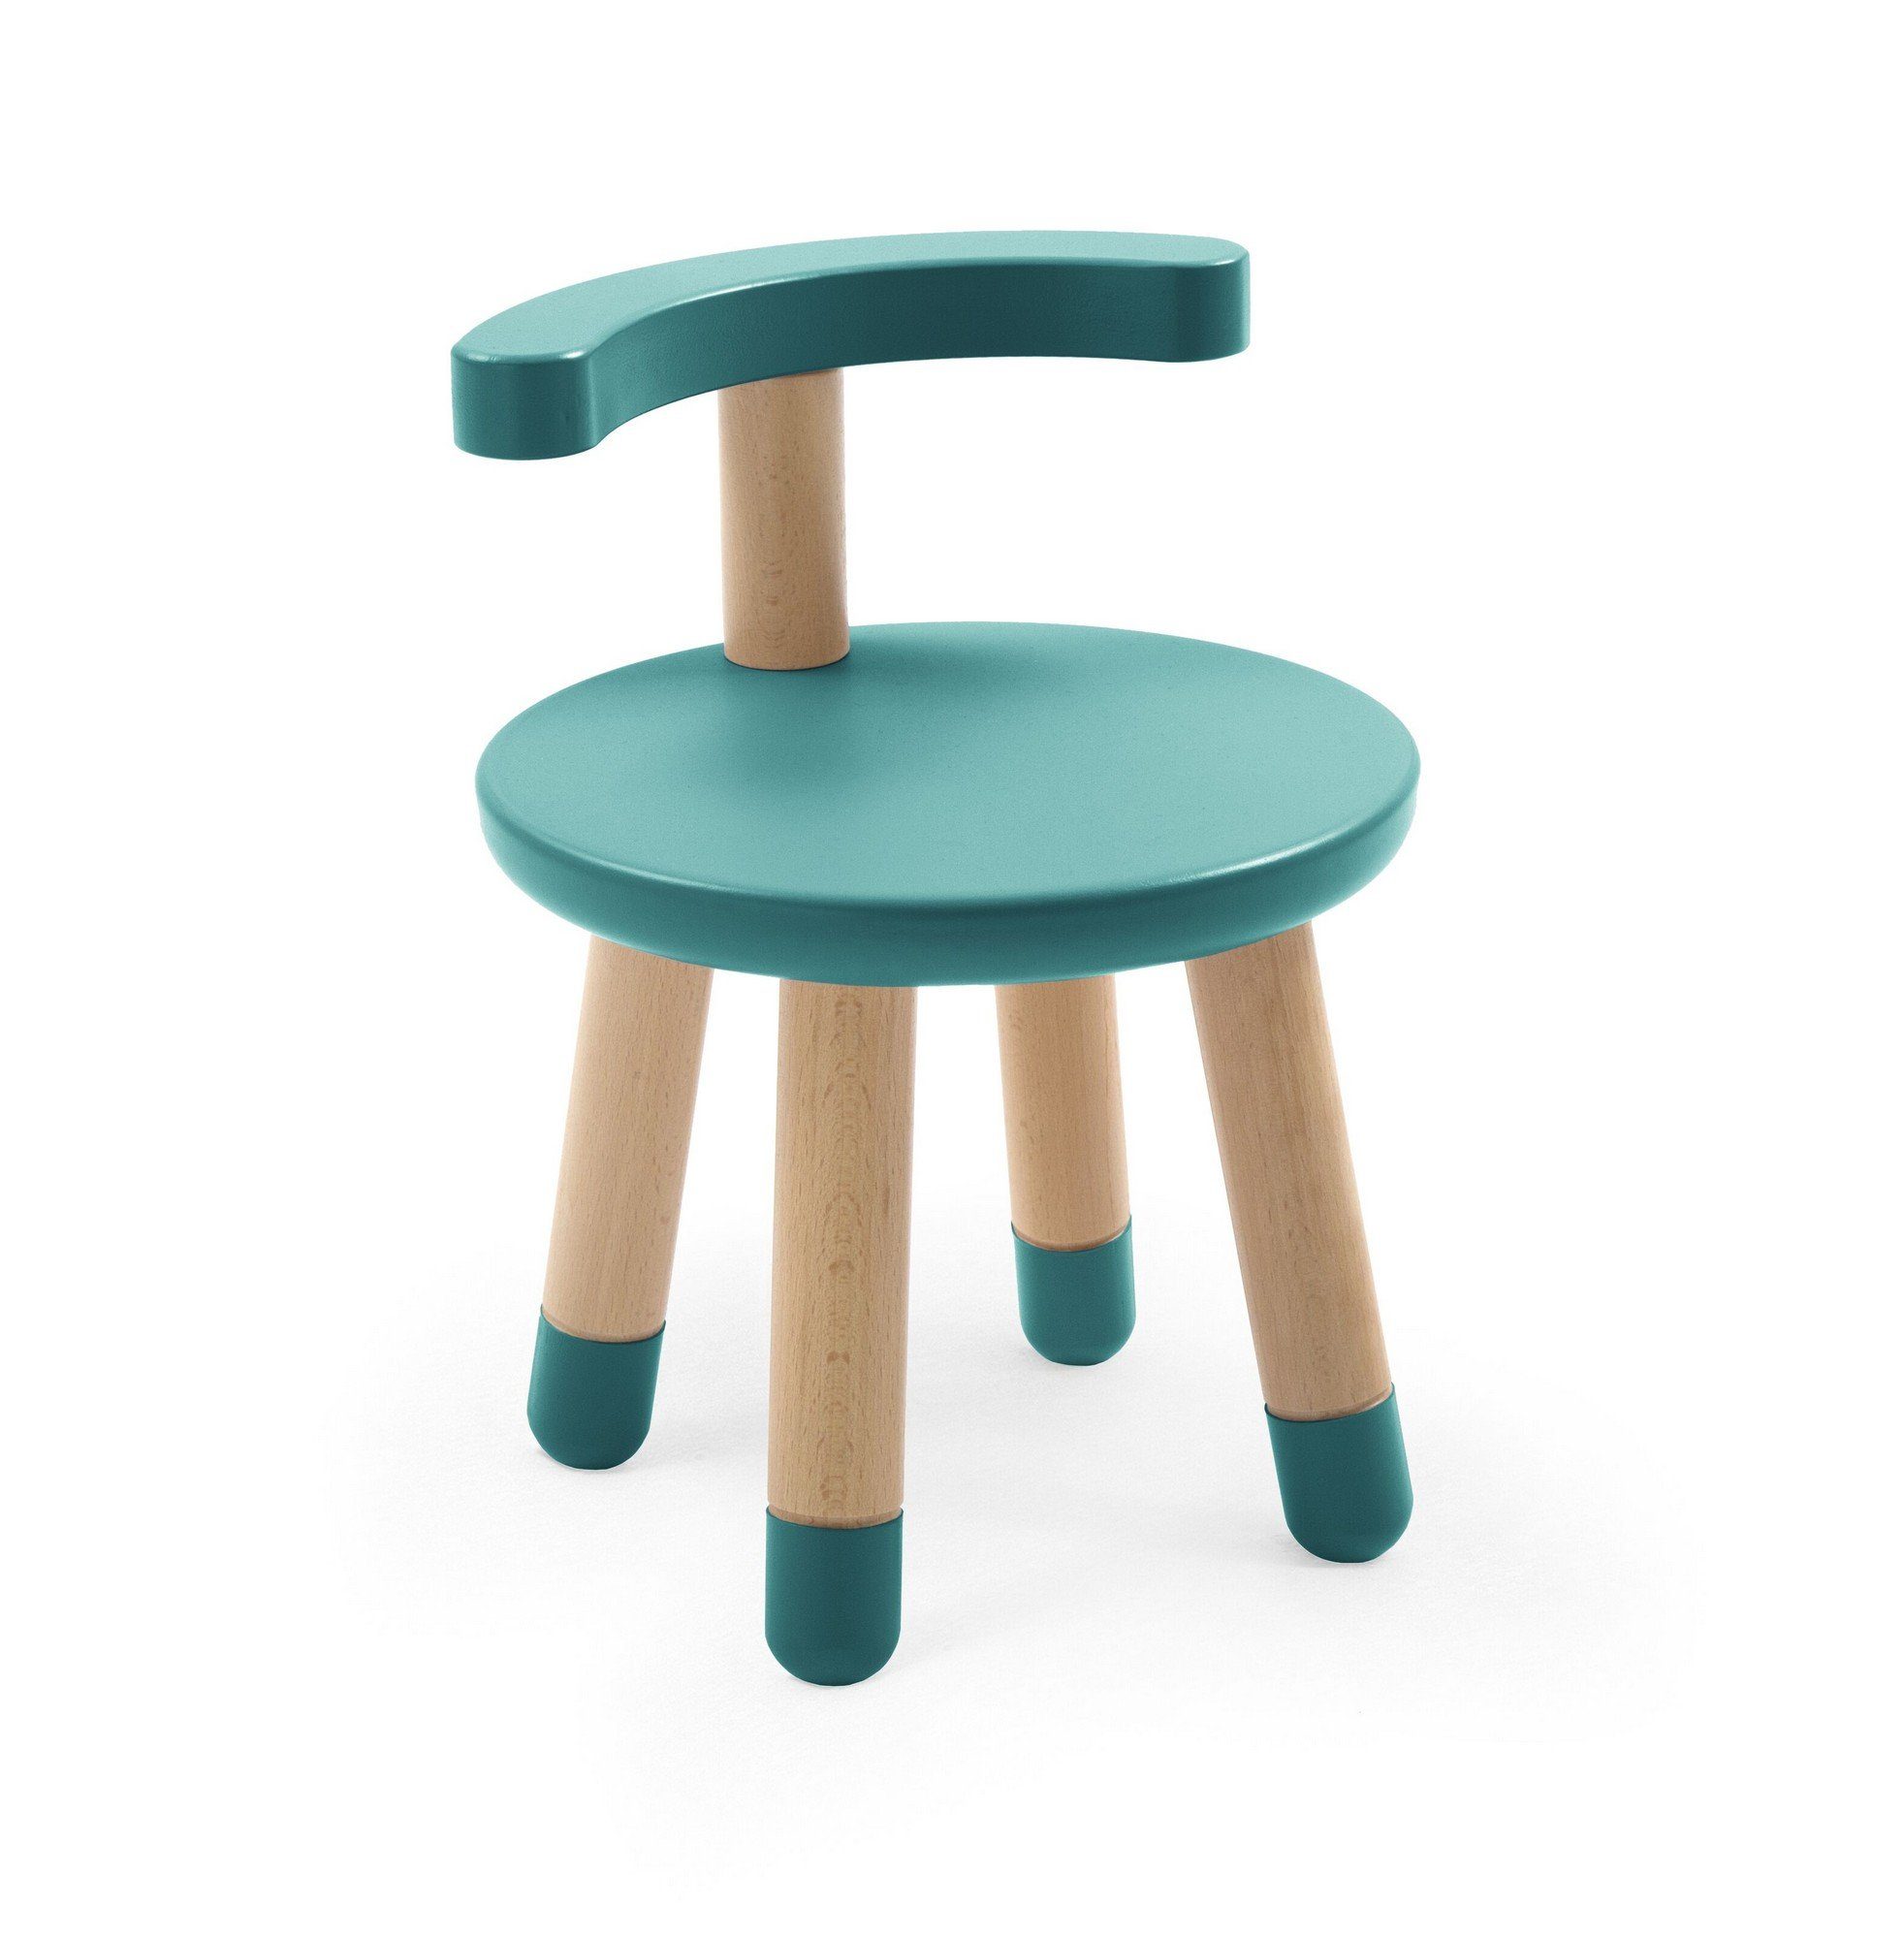 Stokke Kindersitzgruppe MuTable Stuhl - Kinder Holzstuhl für den Multifunktionsspieltisch Mutable - Die ideale Ergänzung für den Spieltisch Tiffany | Spieltische